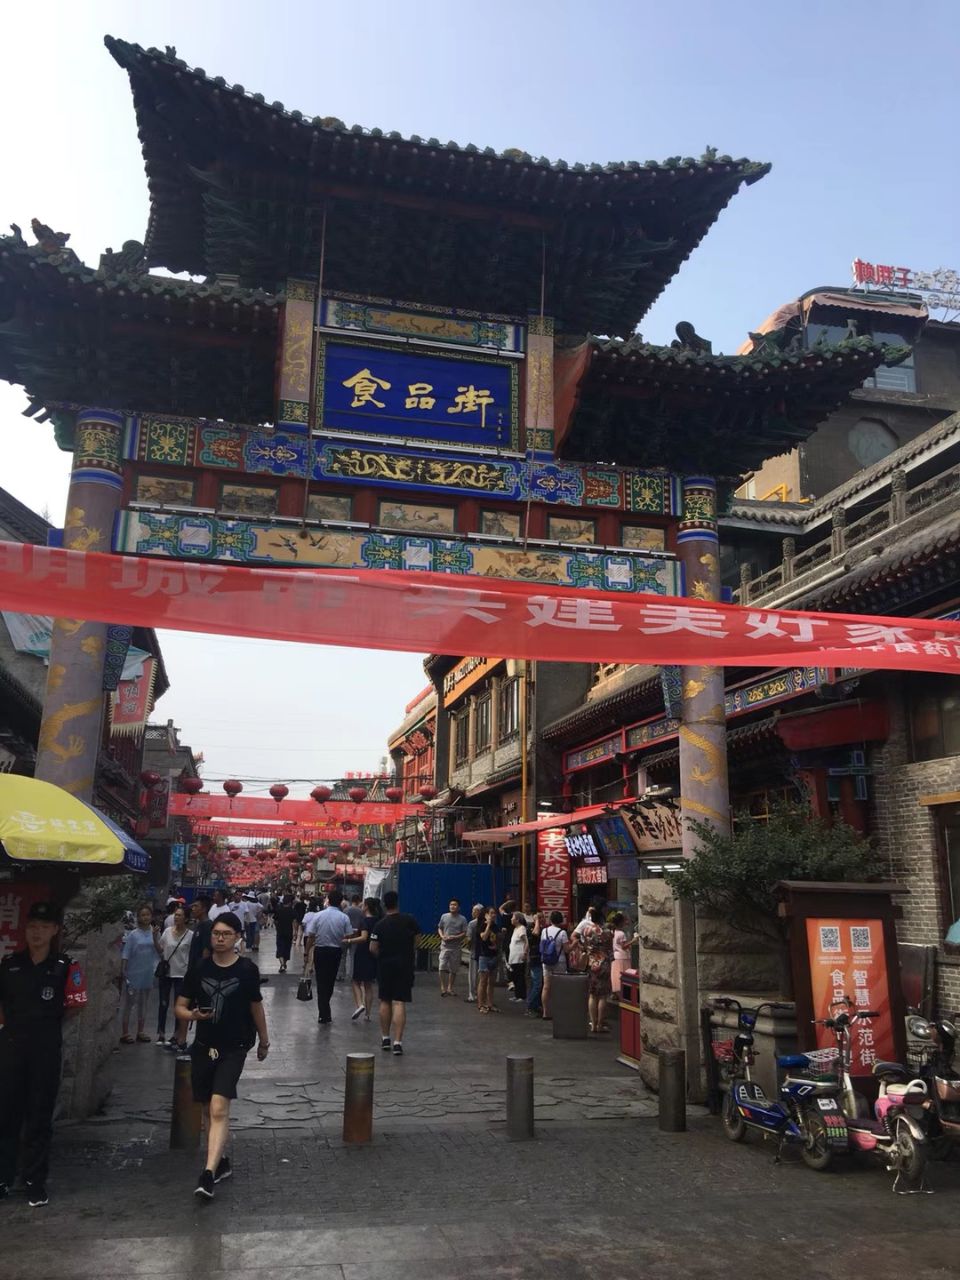 太原市食品街太原市食品街The Food Street of Taiyuan